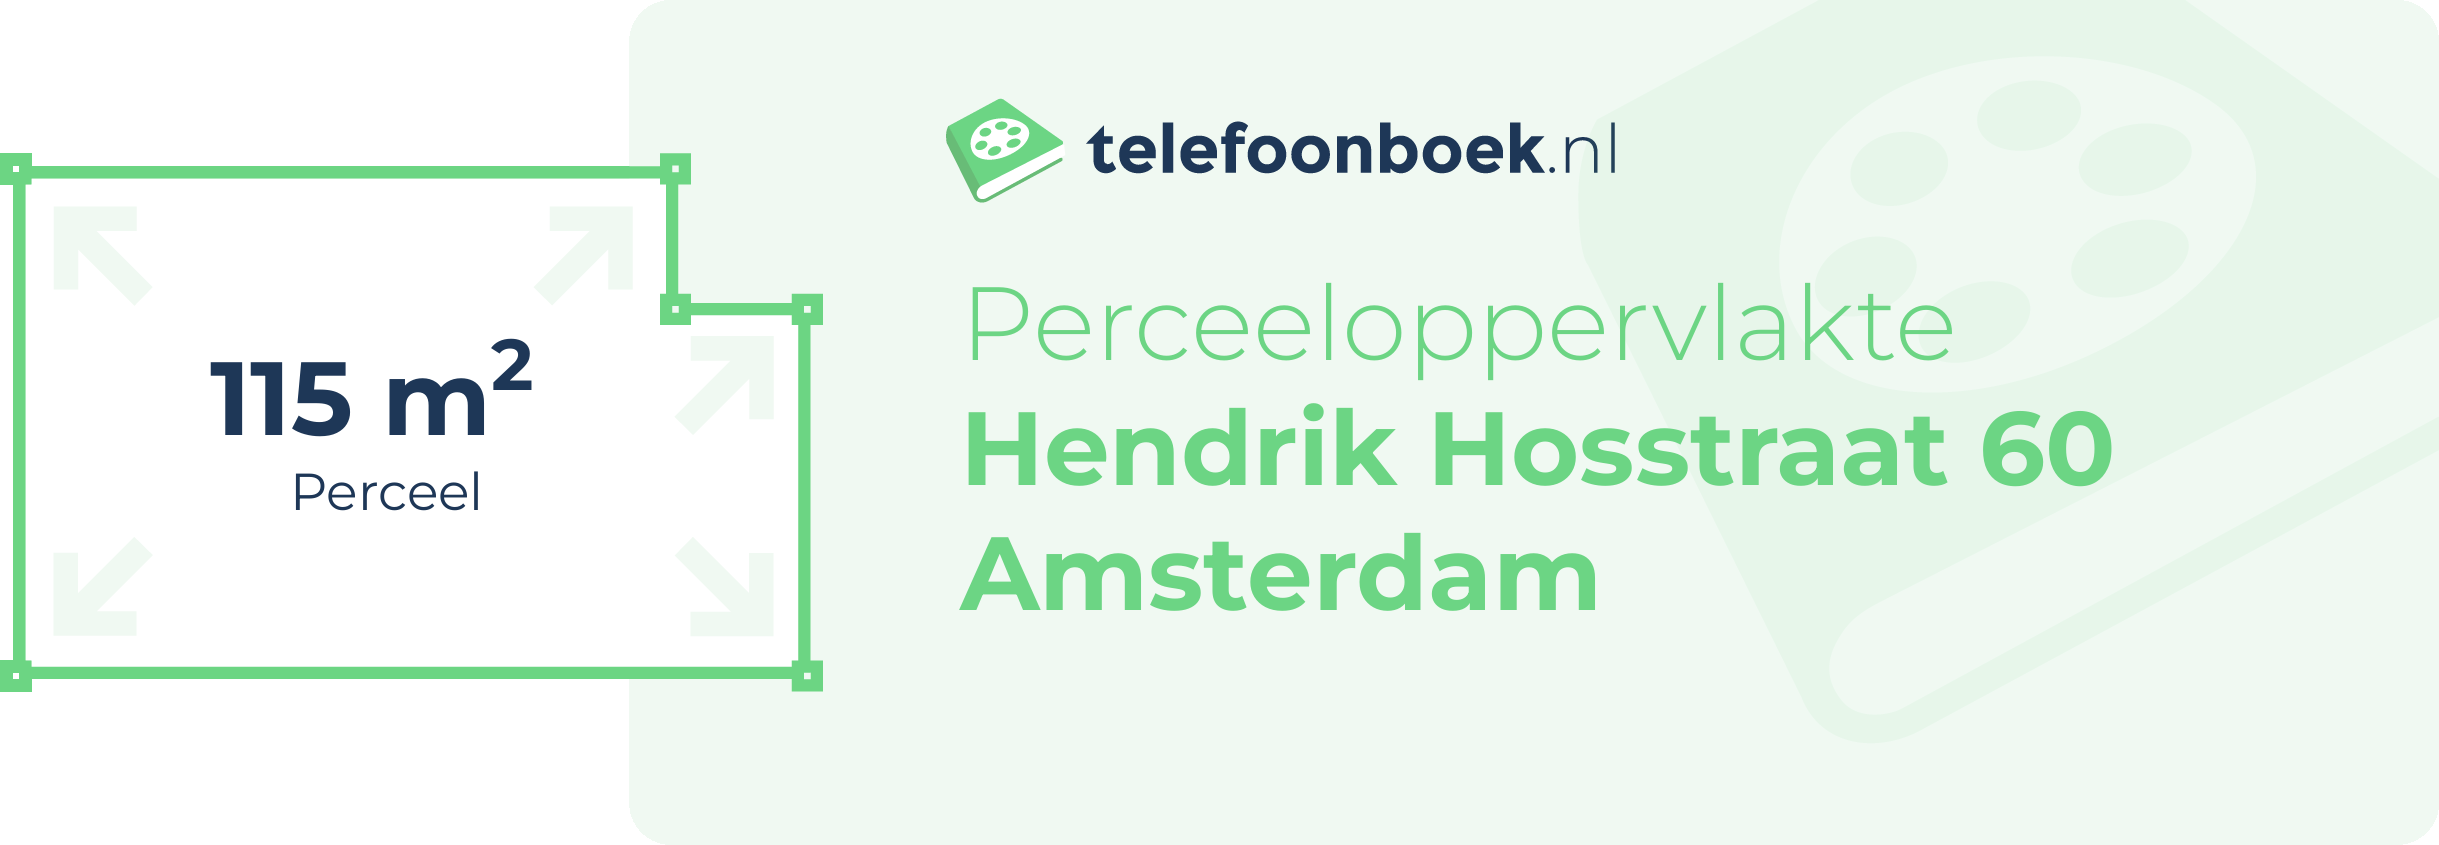 Perceeloppervlakte Hendrik Hosstraat 60 Amsterdam